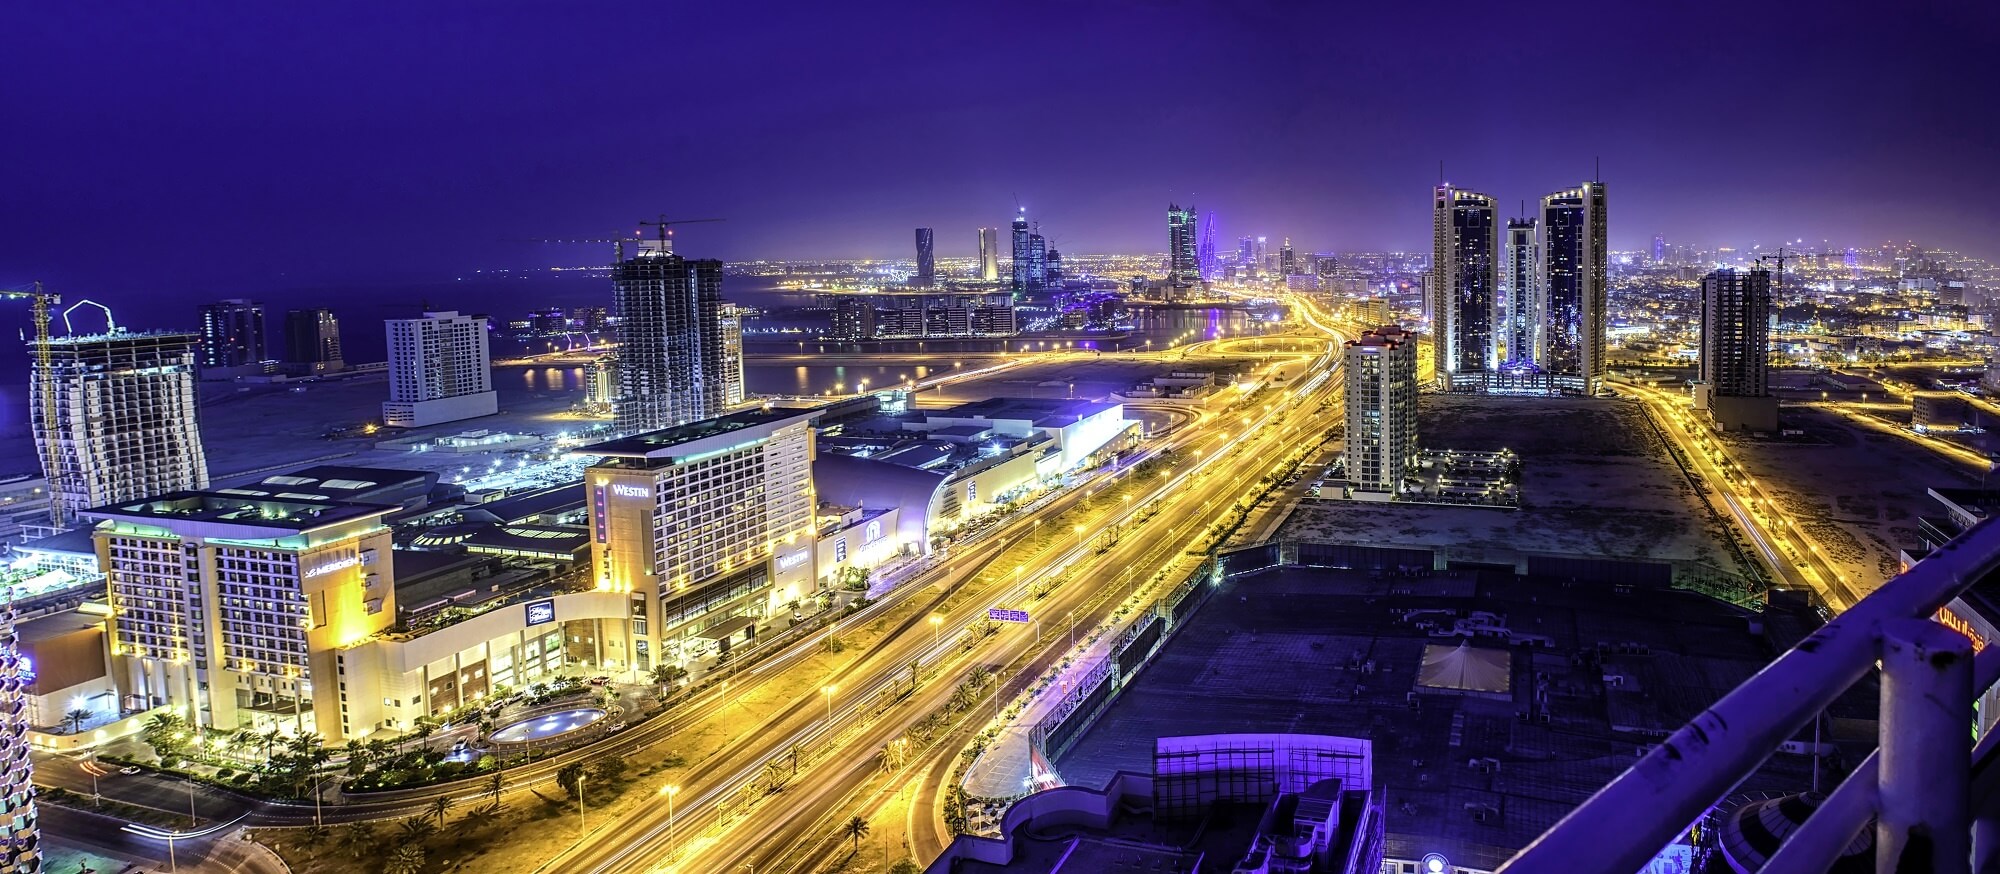 وفقاً لمؤشر “هيريتاج فاونديشن” البحرين تتصدر دول الشرق الأوسط وشمال أفريقيا في الحرية المالية والتجارية والاستثمار